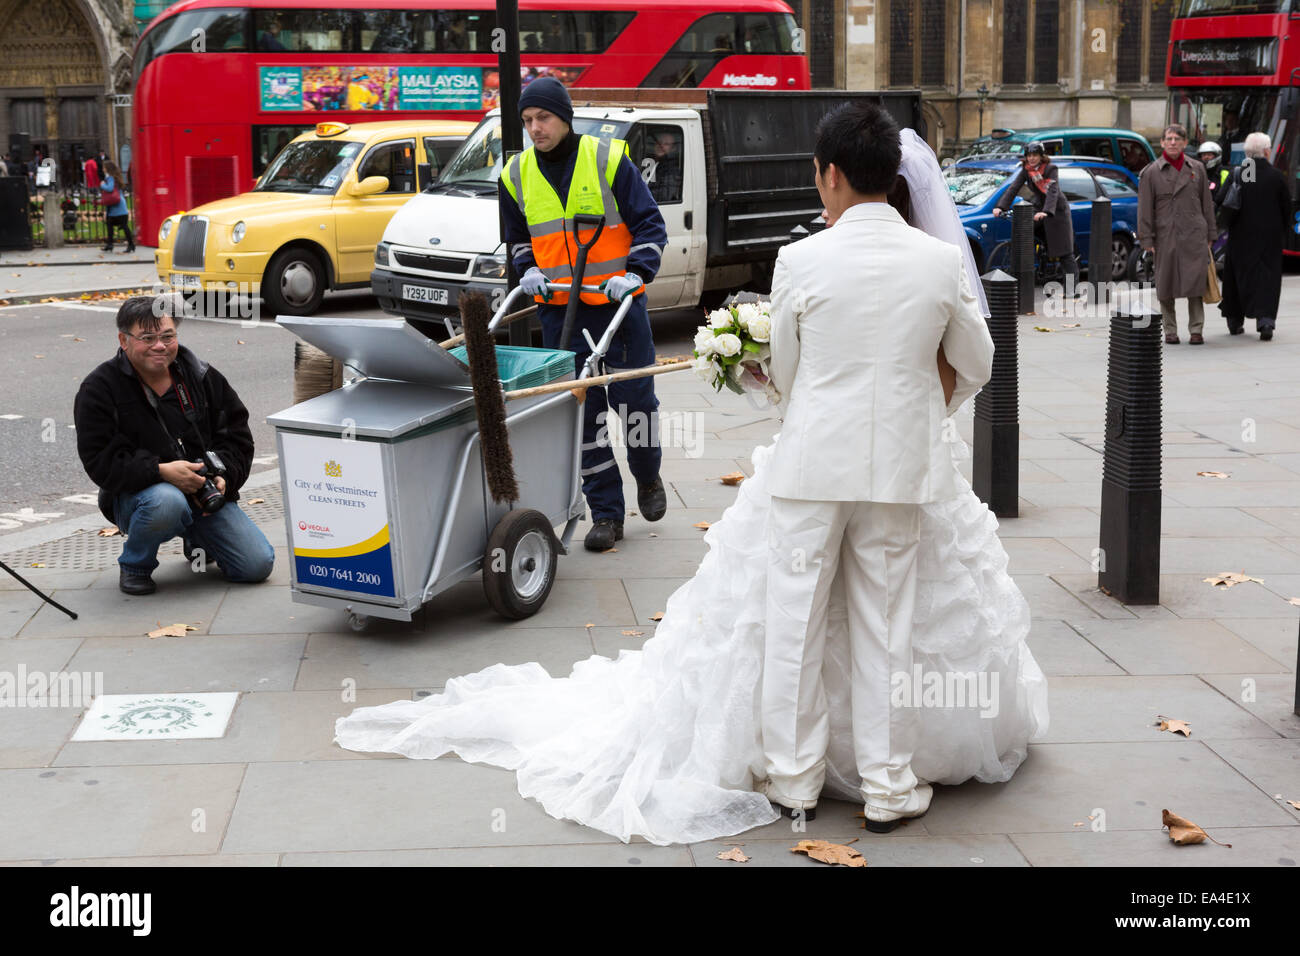 Une balayeuse conseil Conseil de Westminster promenades à travers une séance photo de mariage chinois à Londres Banque D'Images